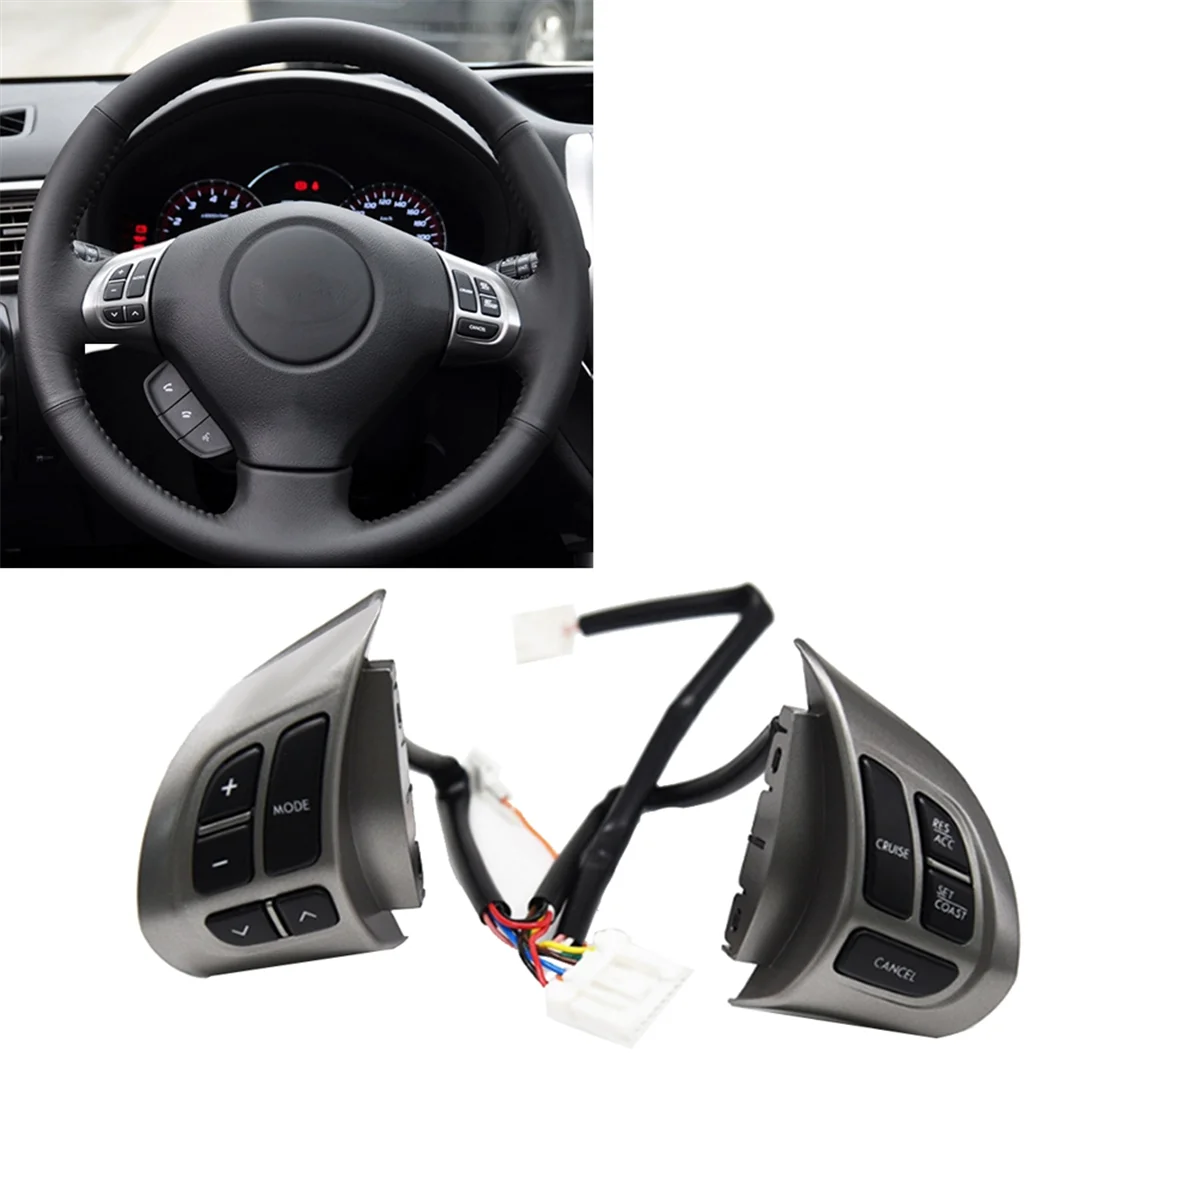 Переключатель кнопки управления аудиосистемой на руле автомобиля Переключатель круиз-контроля с жгутом проводов для Subaru Forester - 1